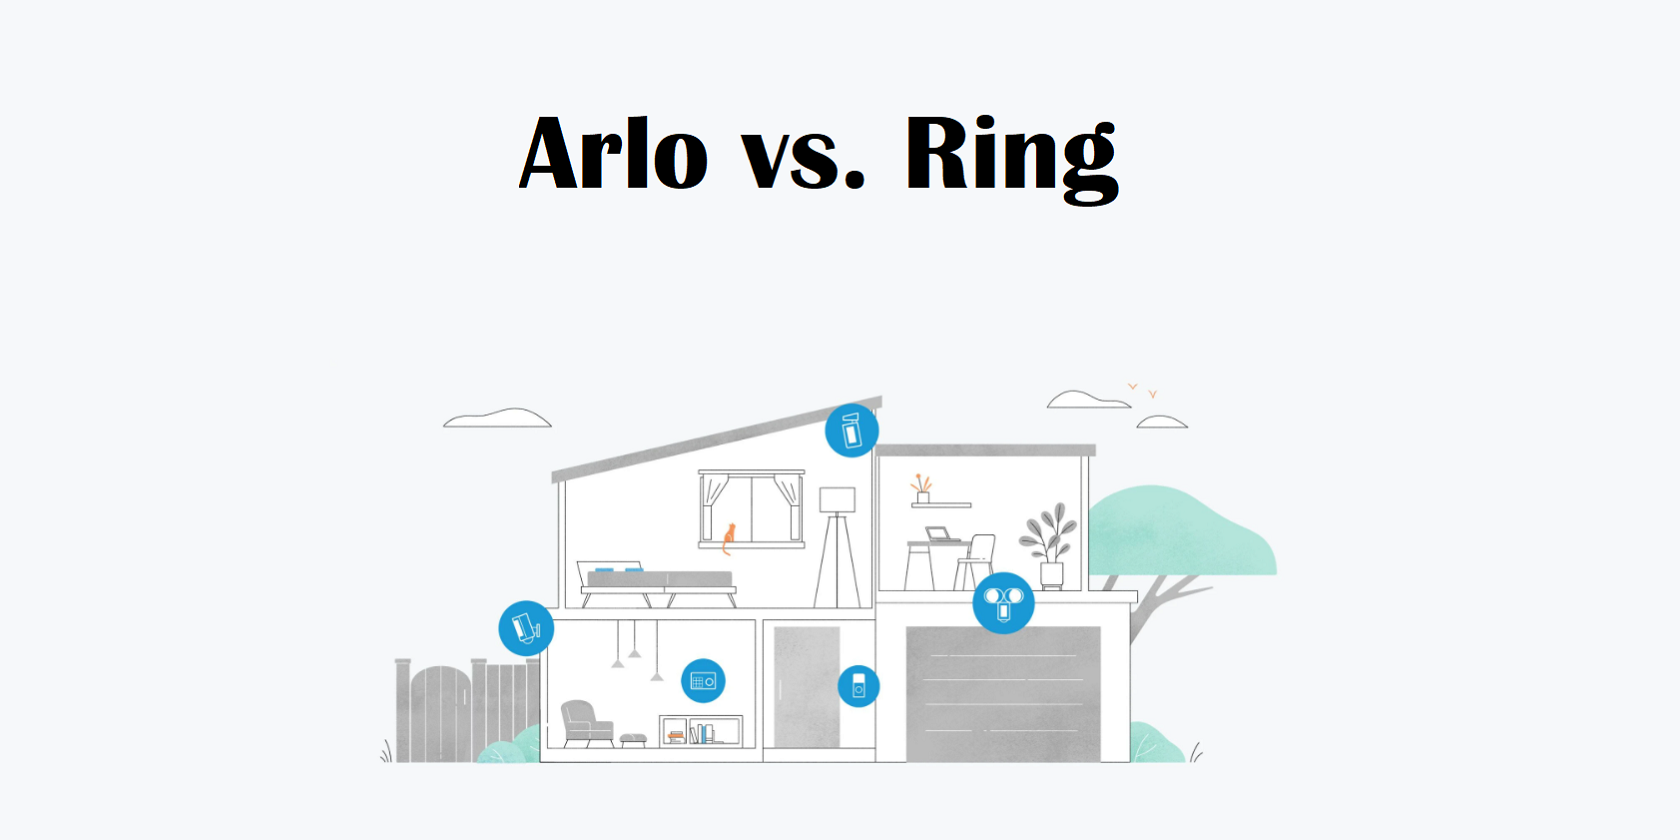 Arlo vs. Ring